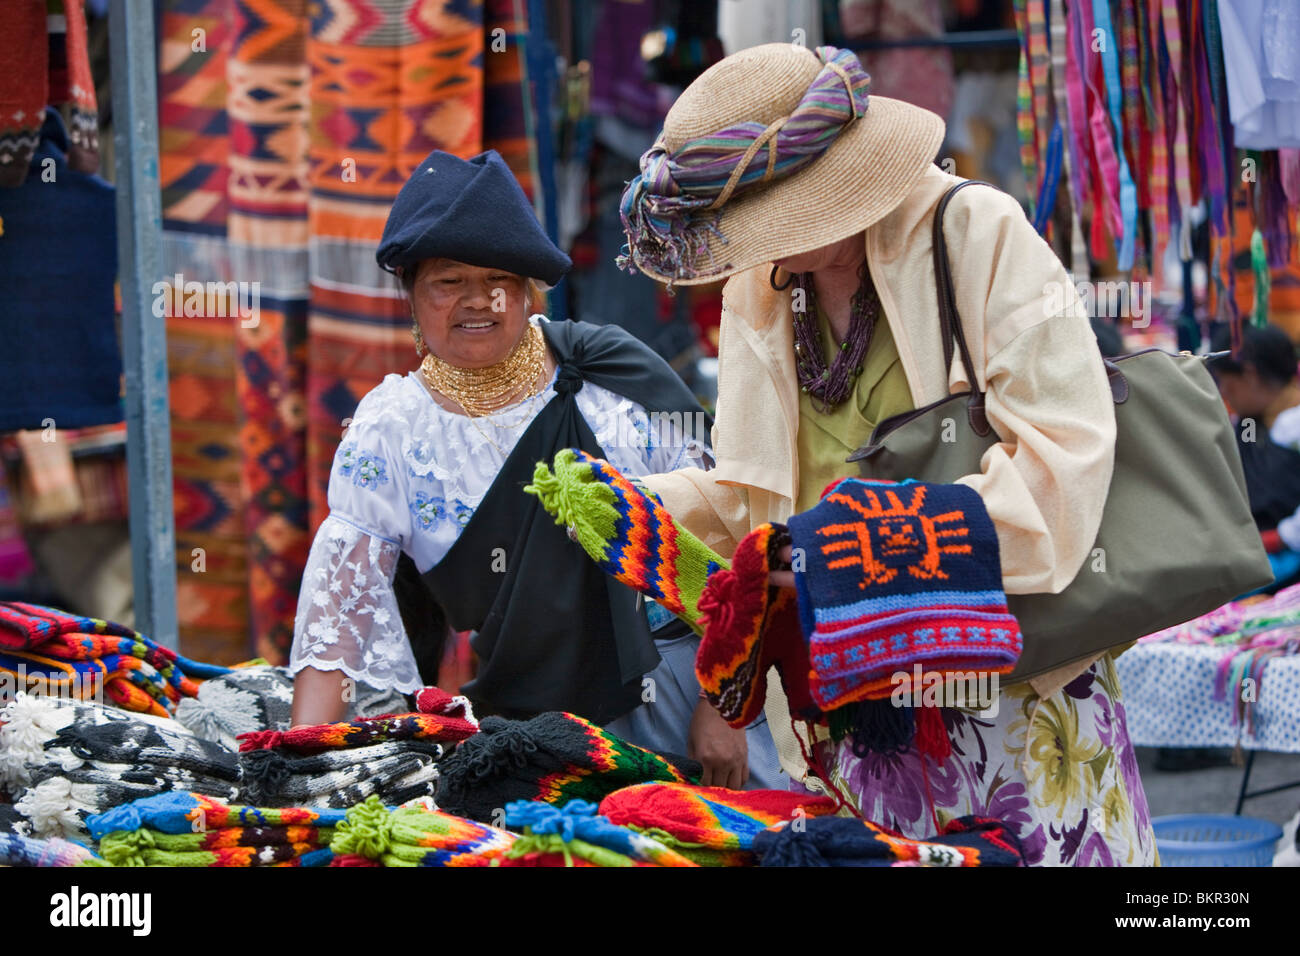 Ecuador, ein Tourist kauft wollene Mützen von eine indigene ecuadorianischen Frau in Otavalo Markt. Stockfoto